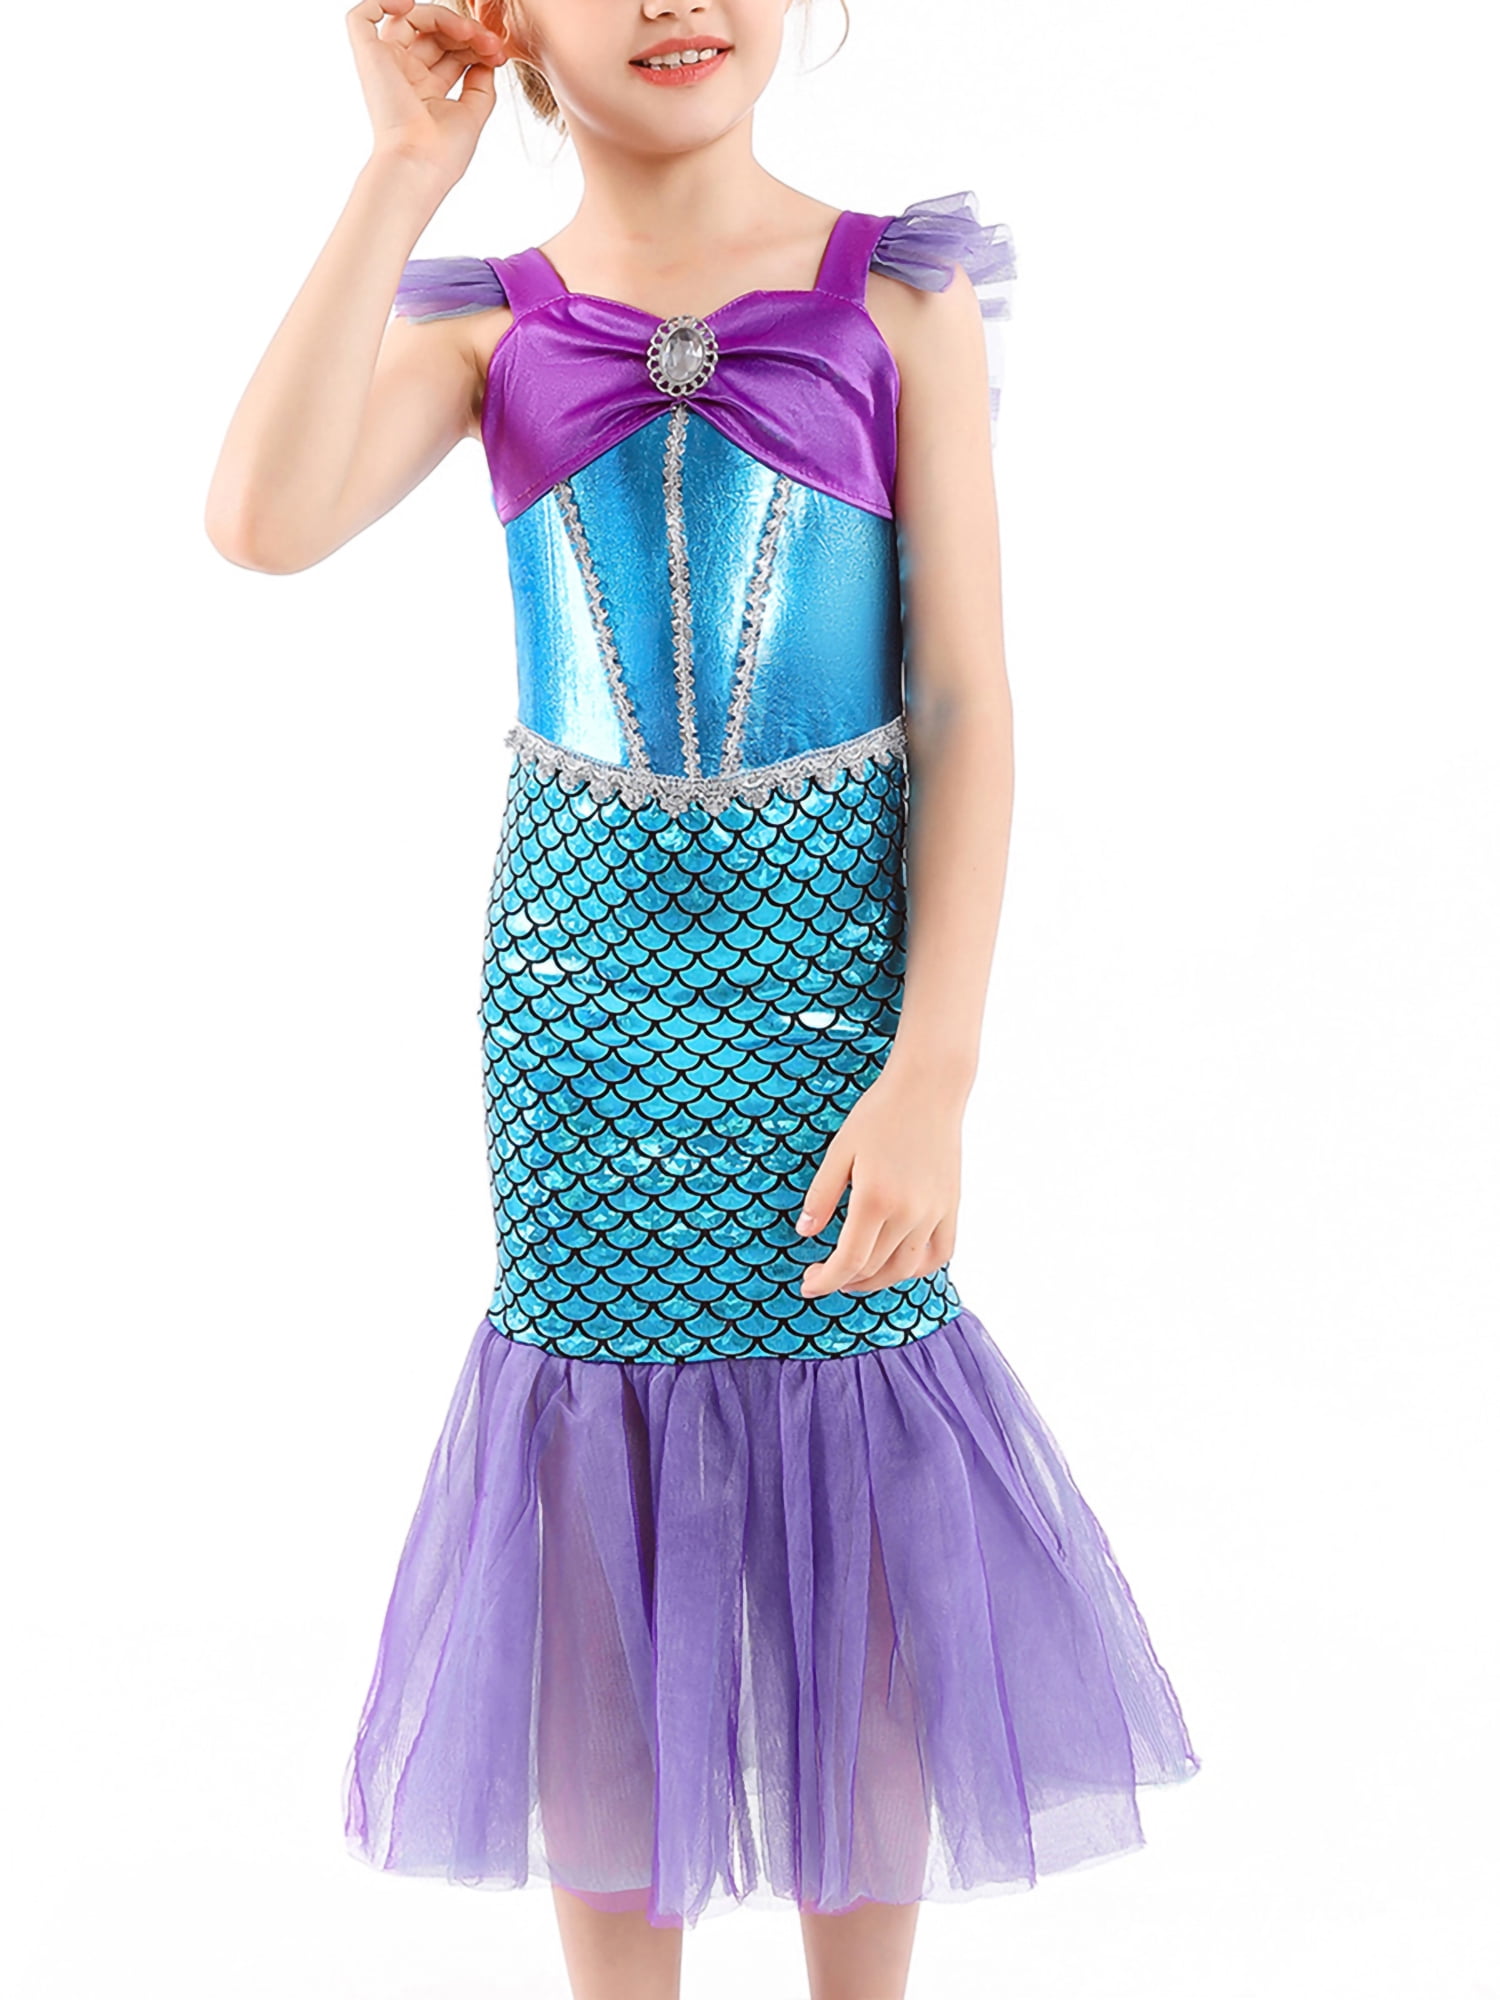 Sunisery Princess Little Mermaid Costume Dress for Girls Tutu